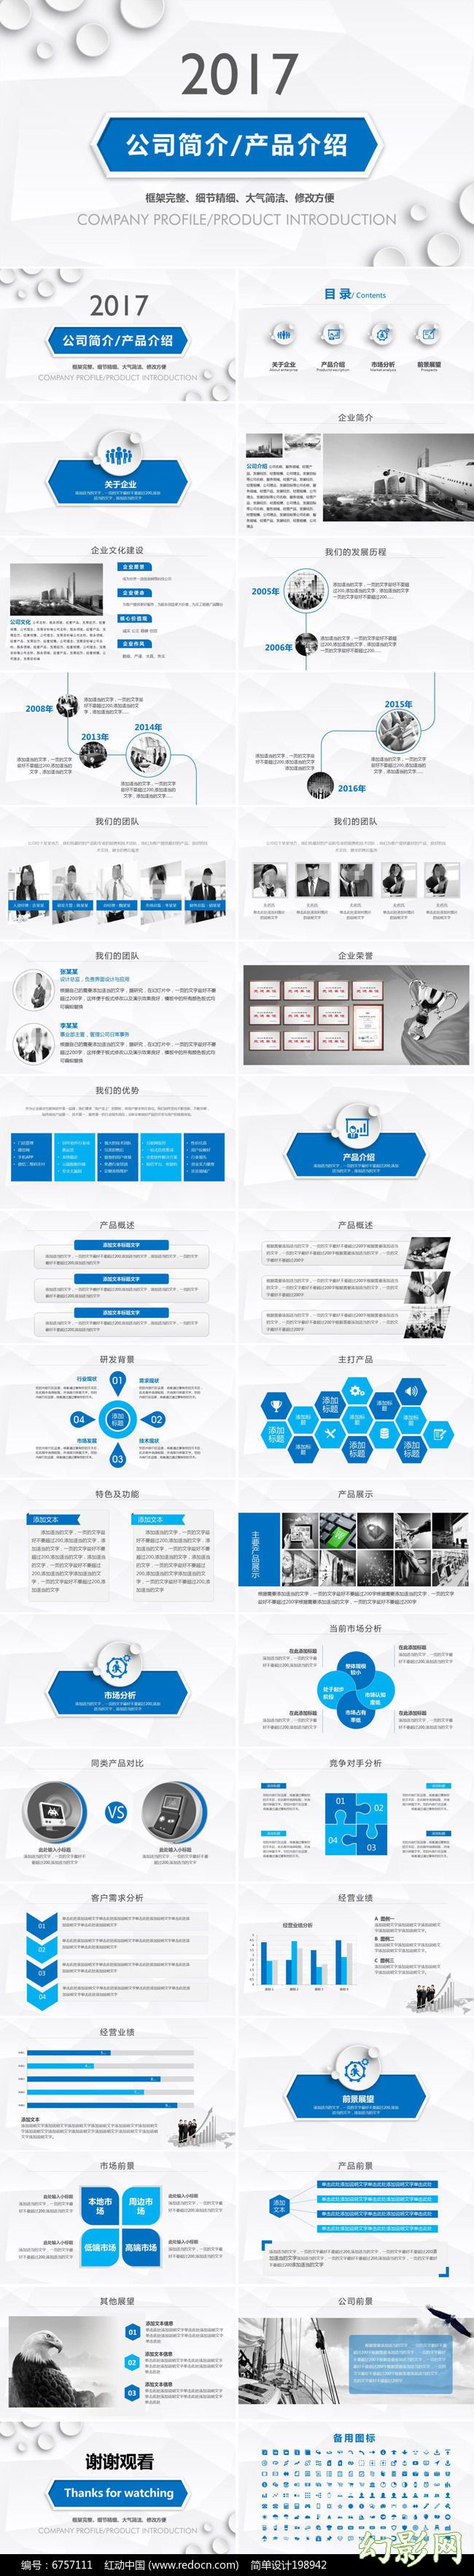 2017蓝白大气商务企业宣传公司简介产品介绍PPT模板